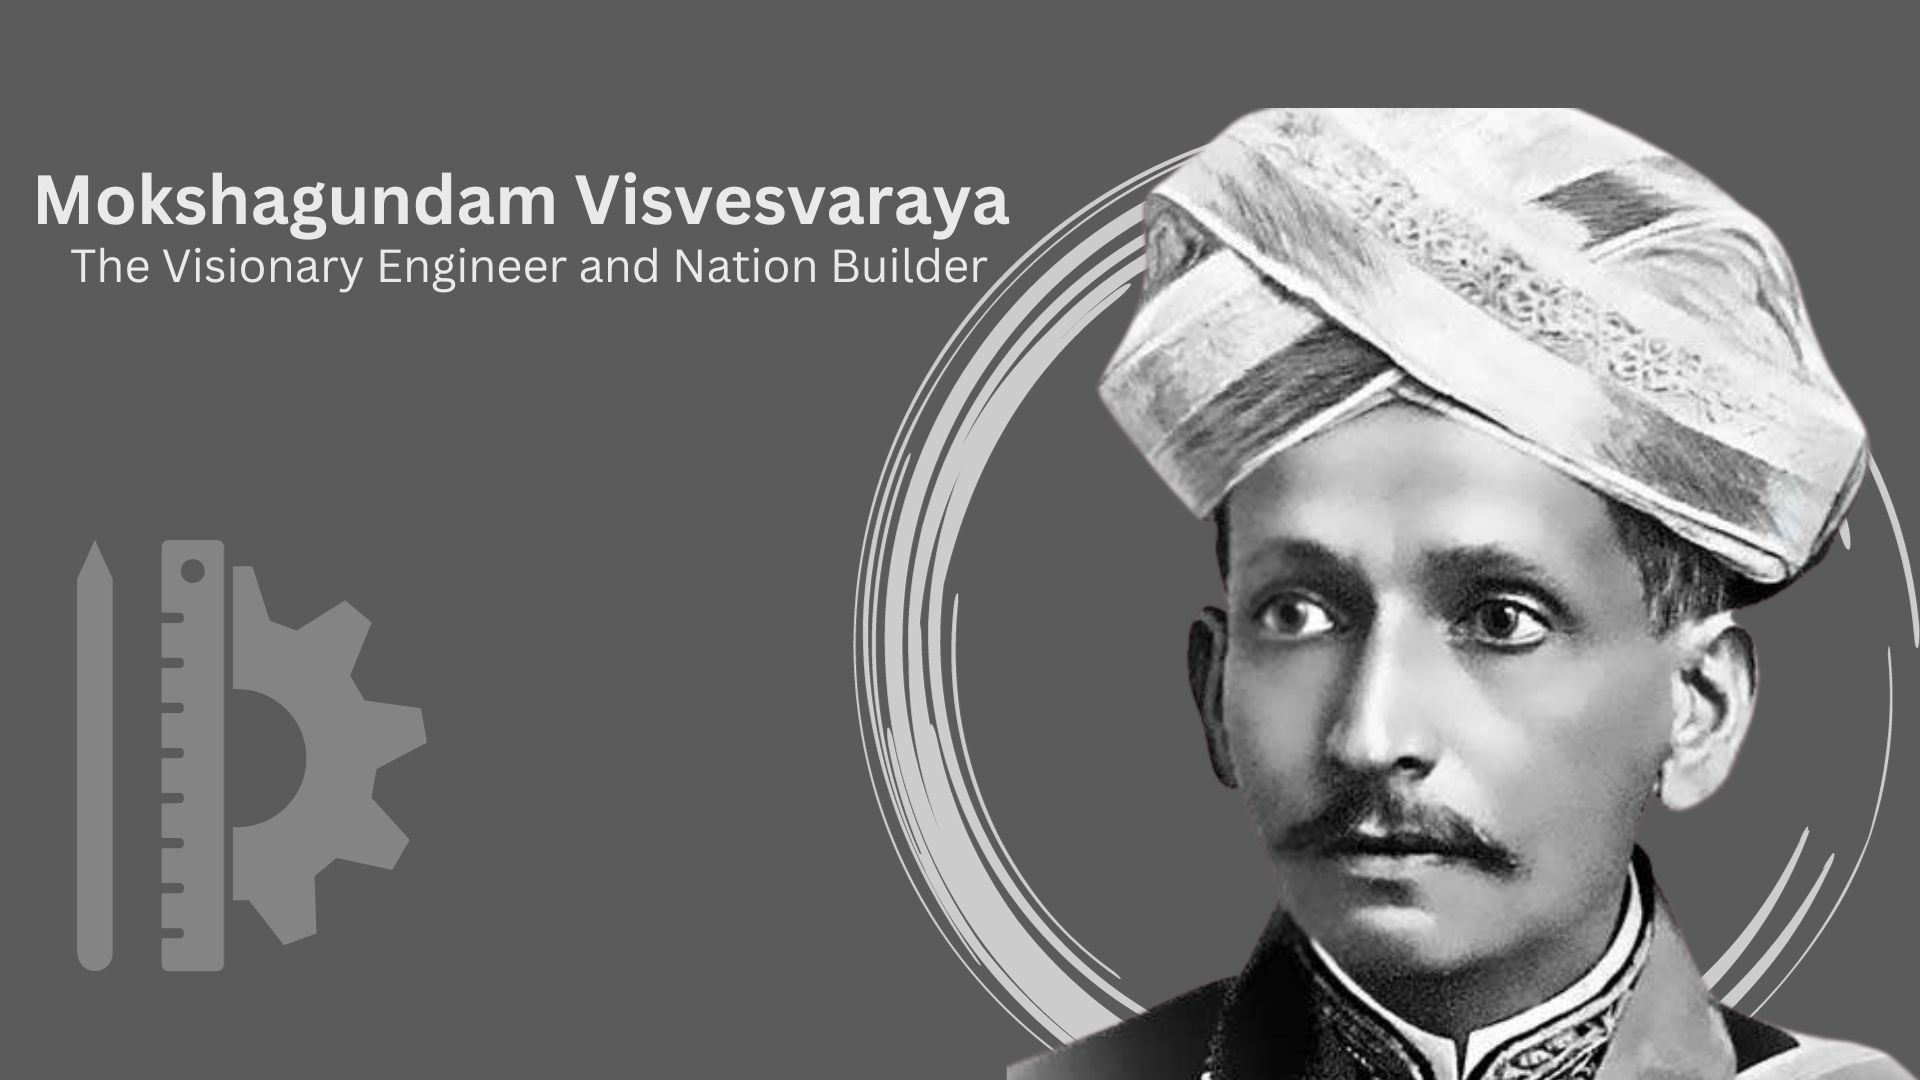 Mokshagundam Visvesvaraya: The Visionary Engineer and Nation Builder